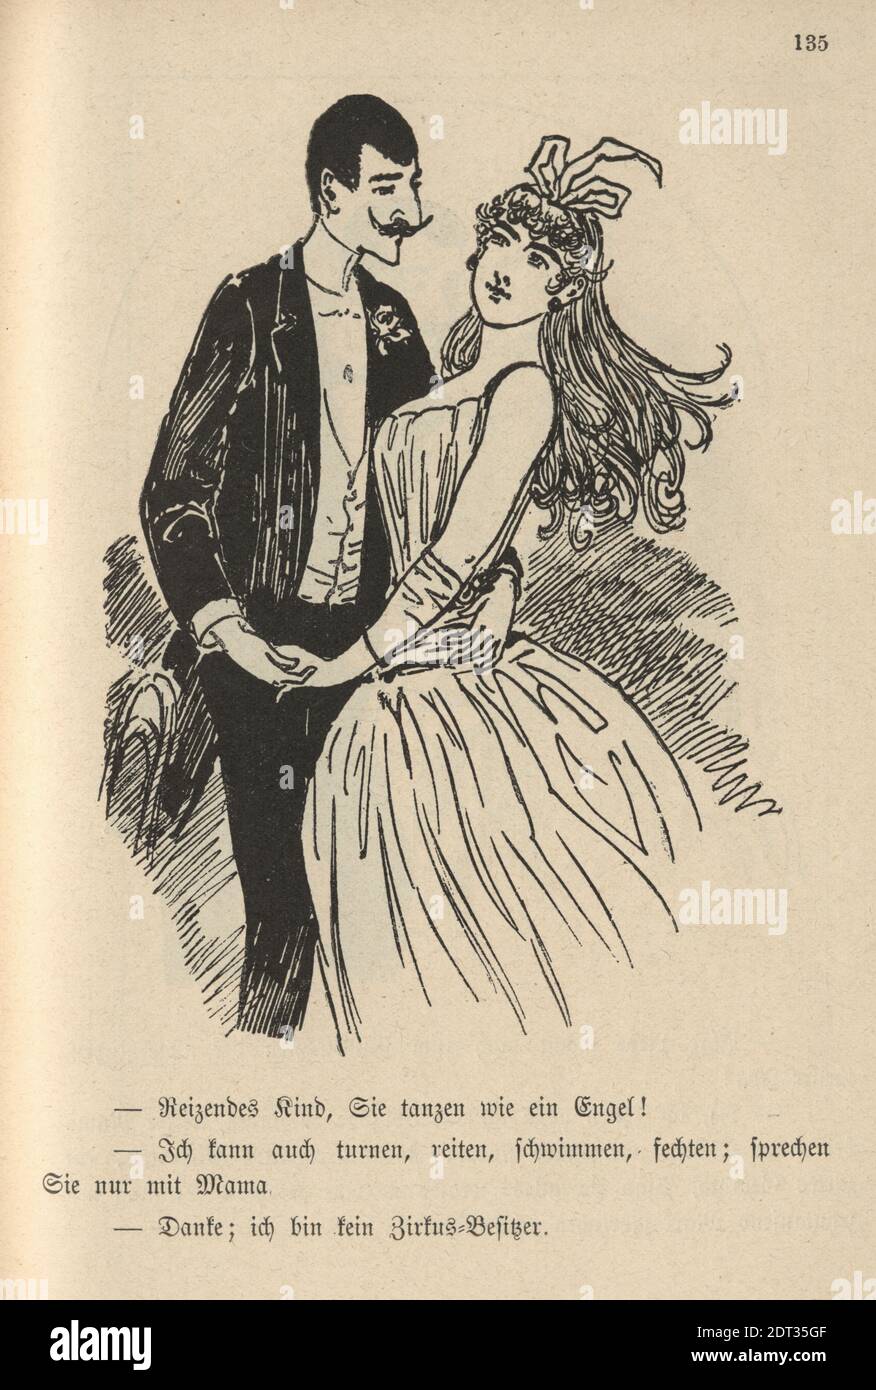 Fumetto vittoriano tedesco di un uomo che balla con una bella donna, 19 ° secolo. Bel bambino, danzate come un angelo! Posso anche fare ginnastica, cavalcare Foto Stock